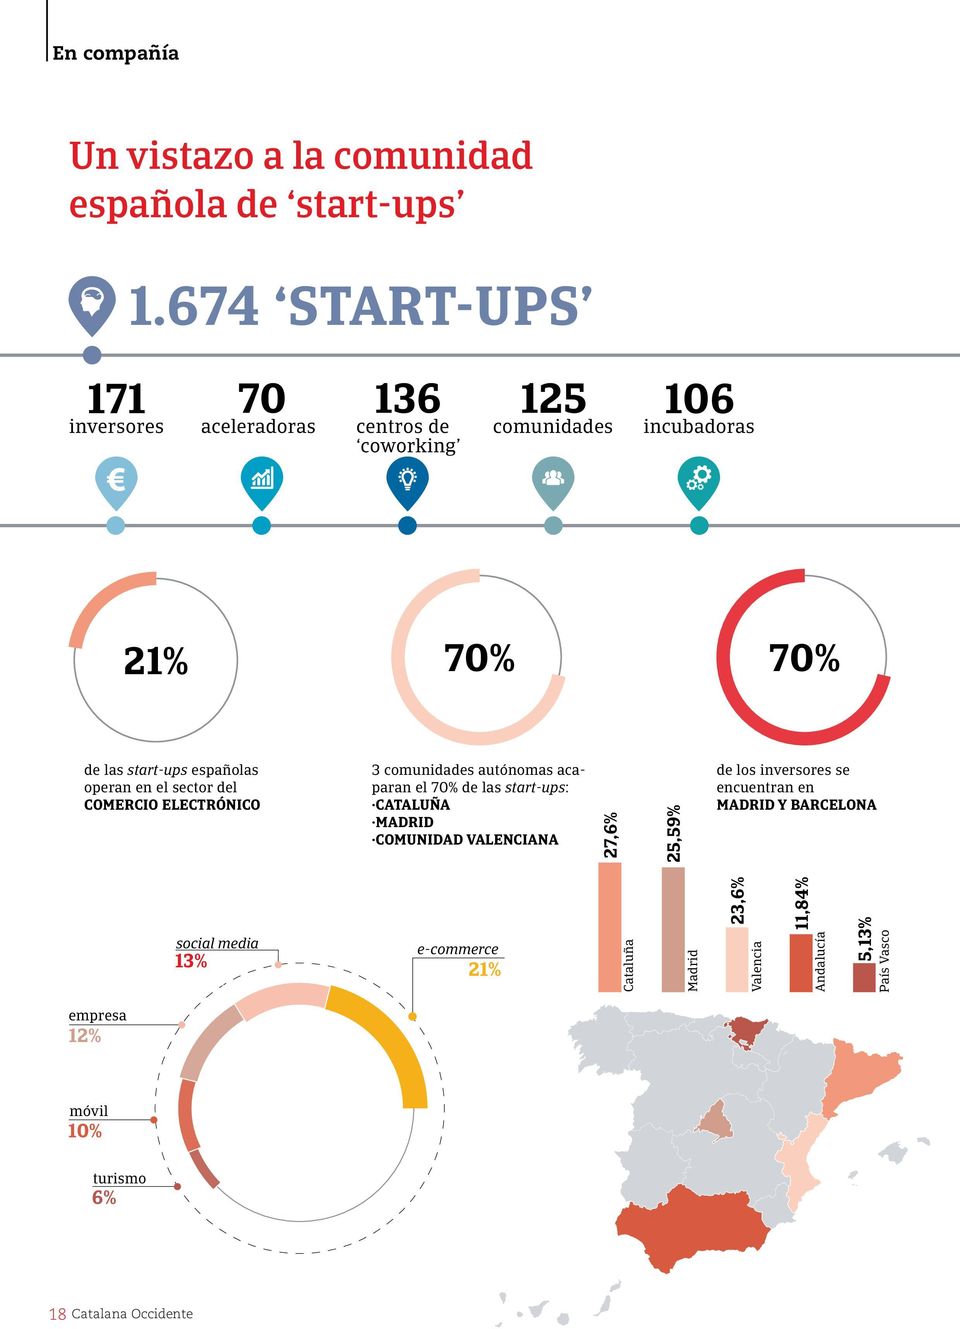 operan en el sector del COMERCIO ELECTRÓNICO 3 comunidades autónomas acaparan el 70% de las start-ups: CATALUÑA MADRID COMUNIDAD VALENCIANA